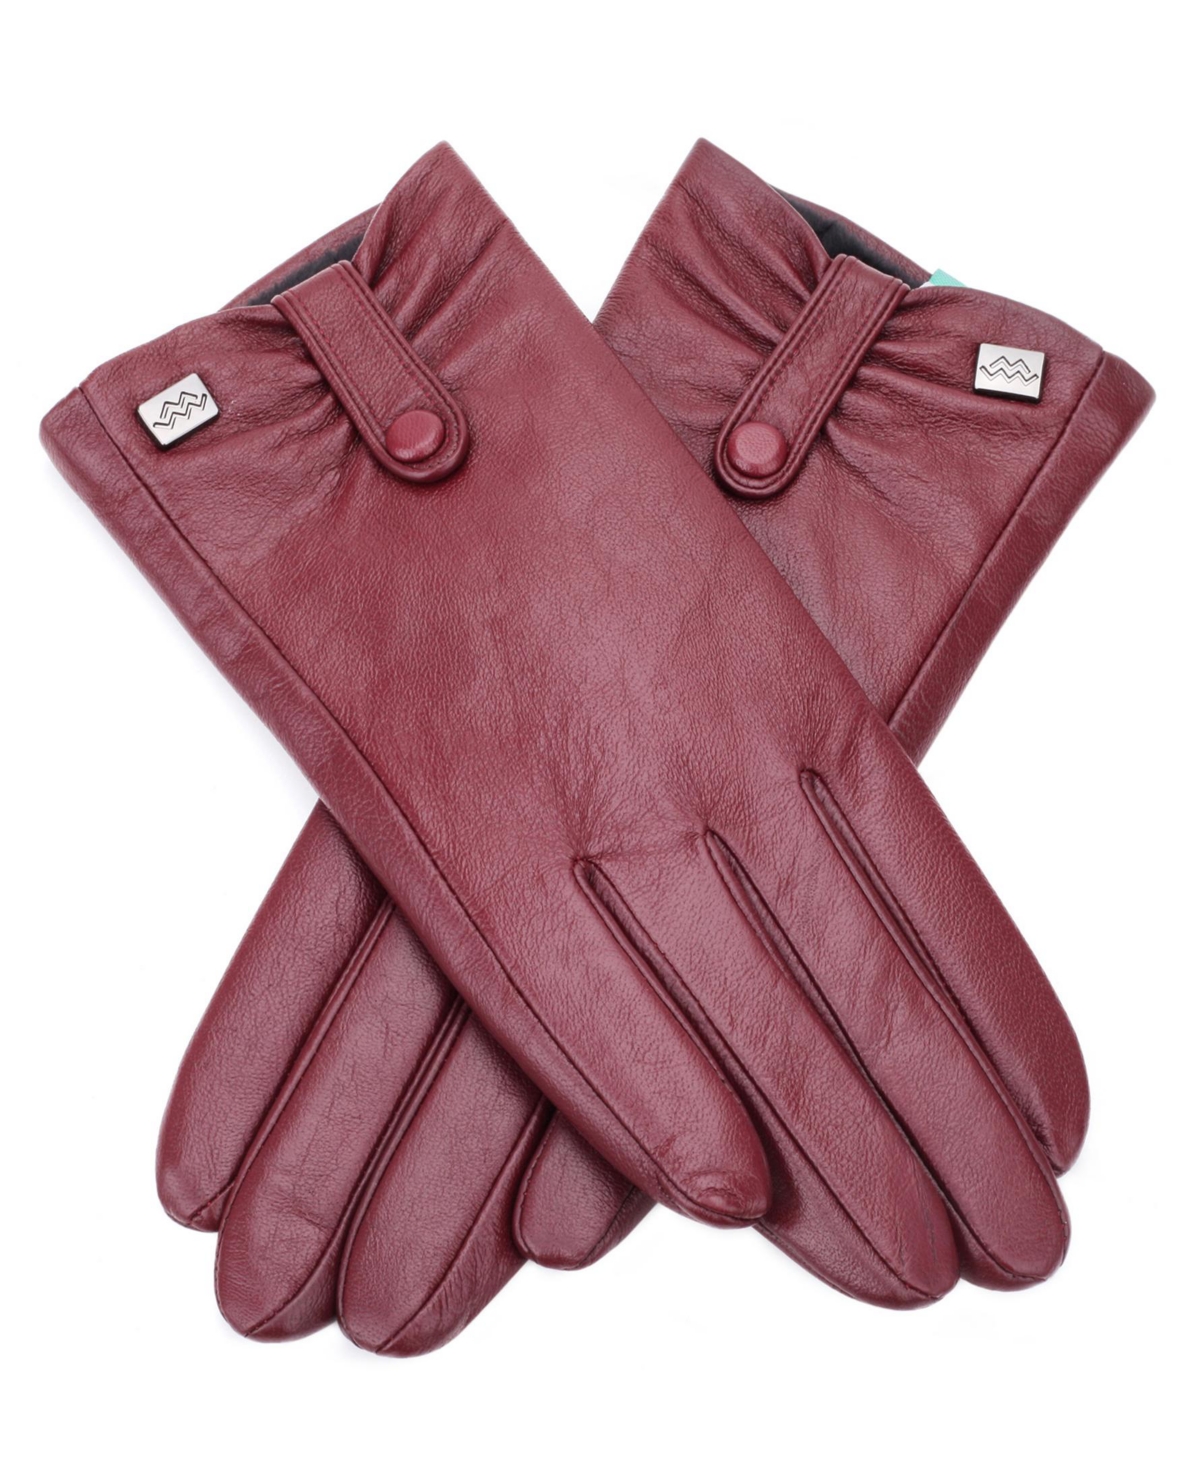 Women's Compress Snap Touchscreen Sheepskin Glove - Brown